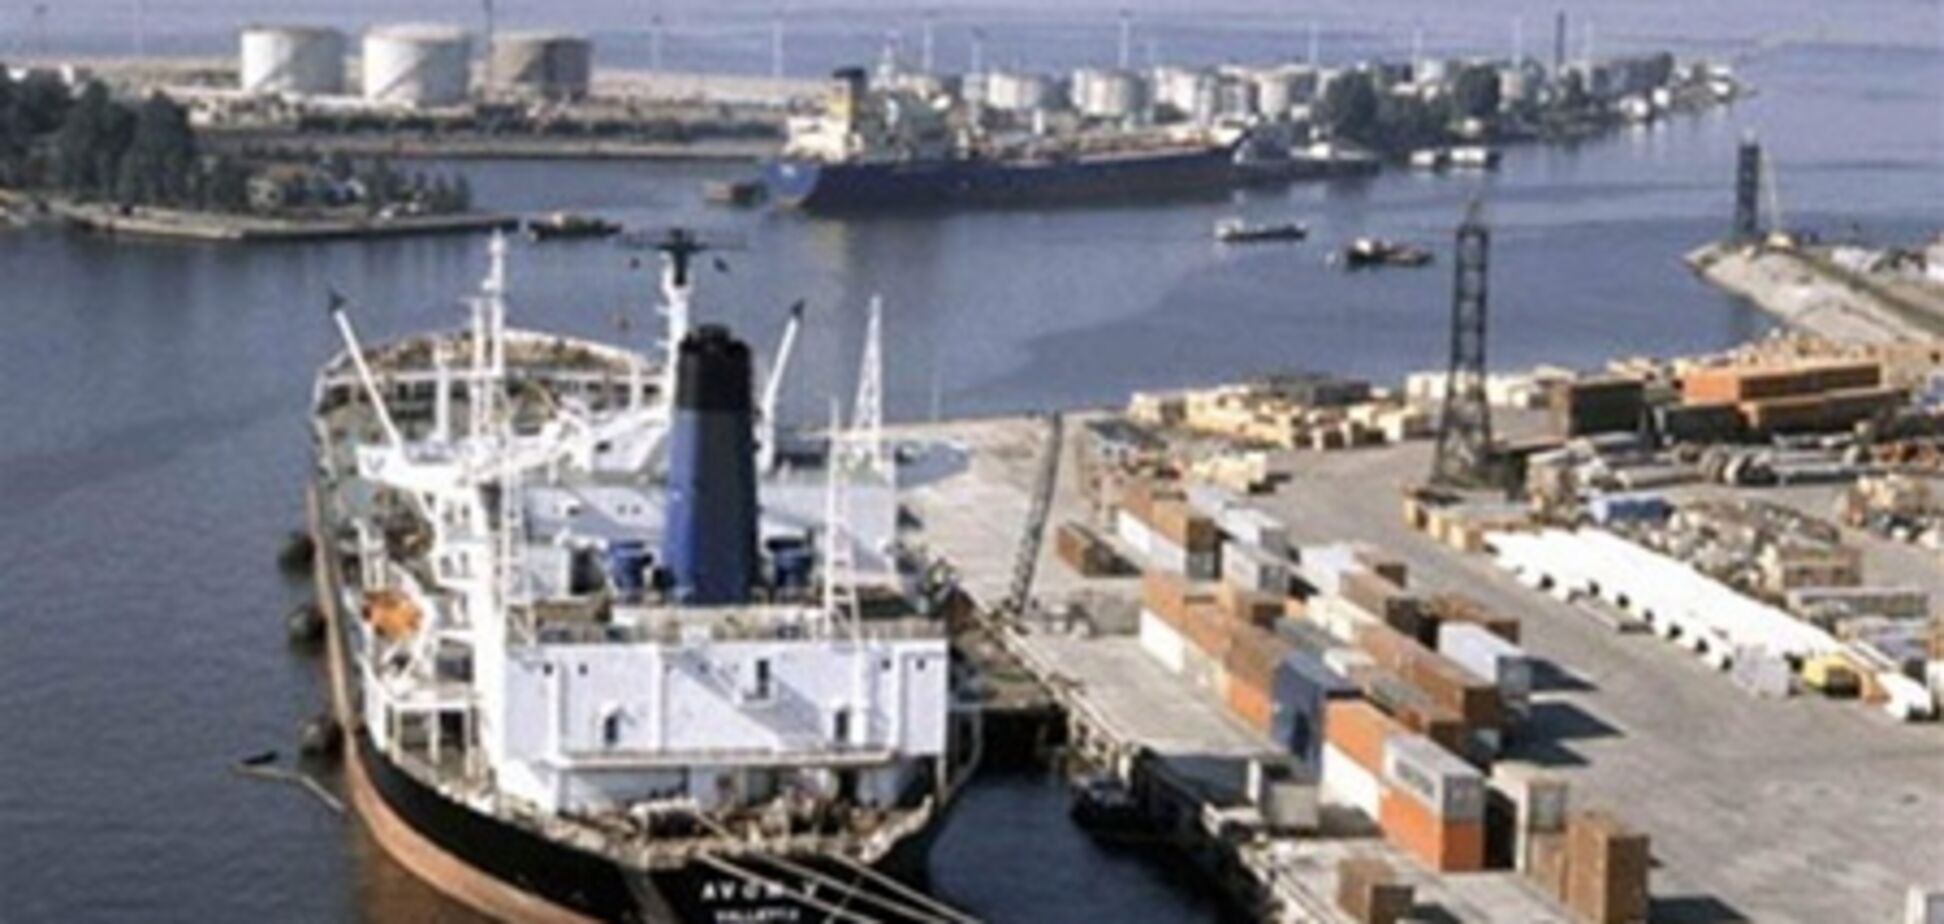 Принятие закона о морских портах привлечет инвестиции - Колесников